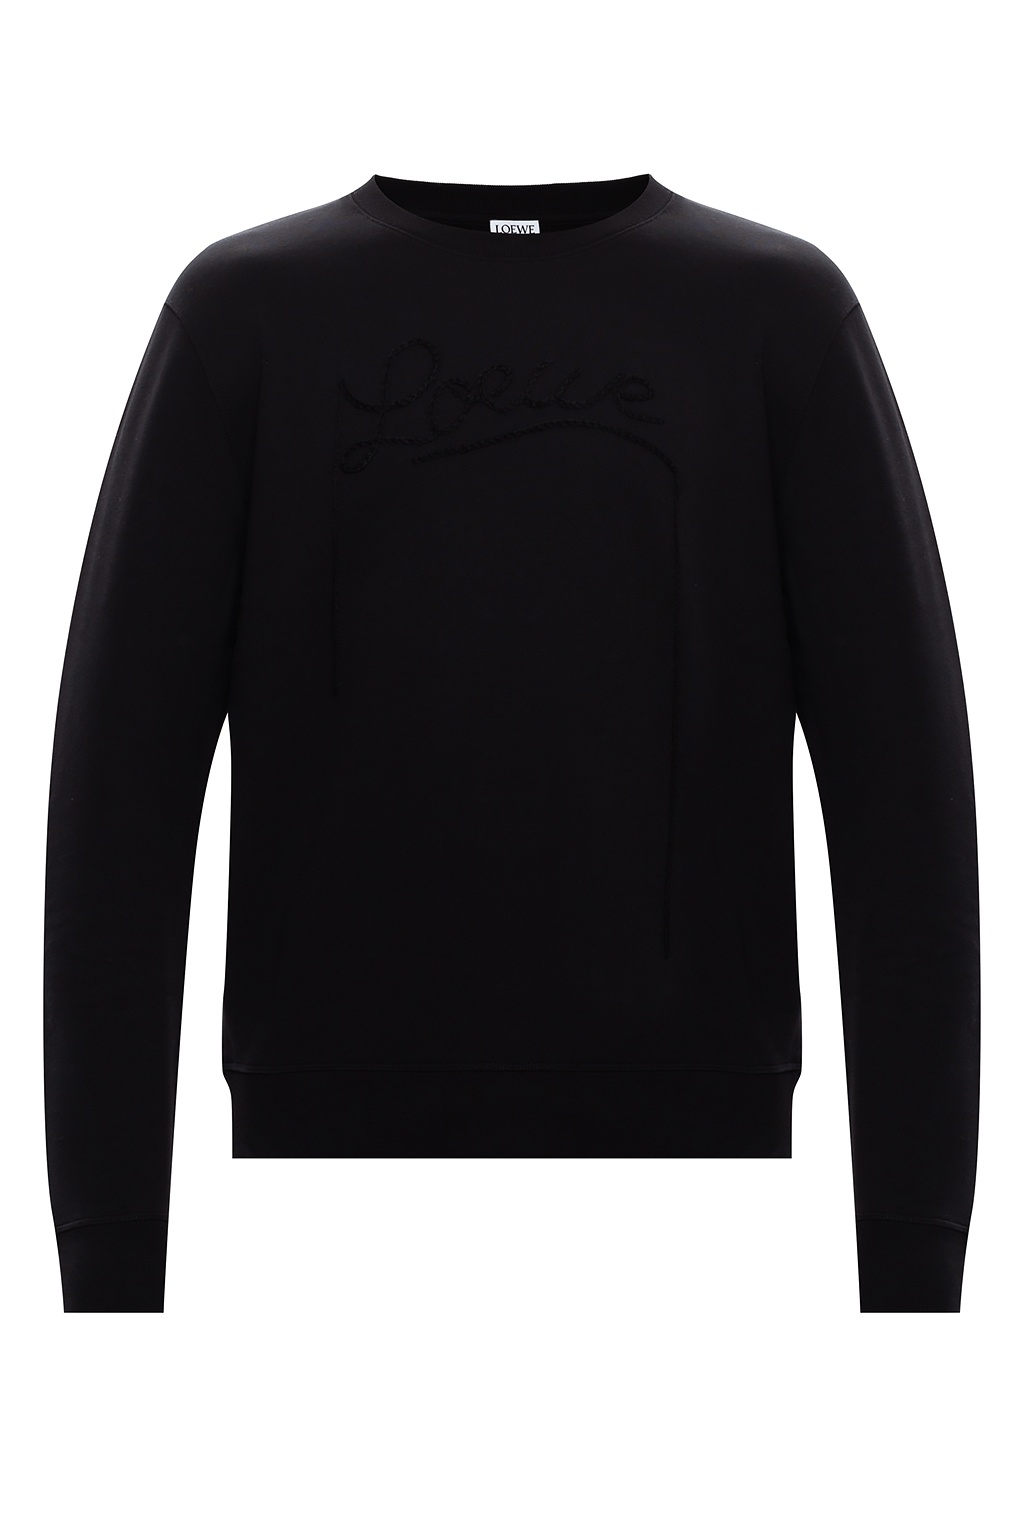 Loewe Branded sweatshirt